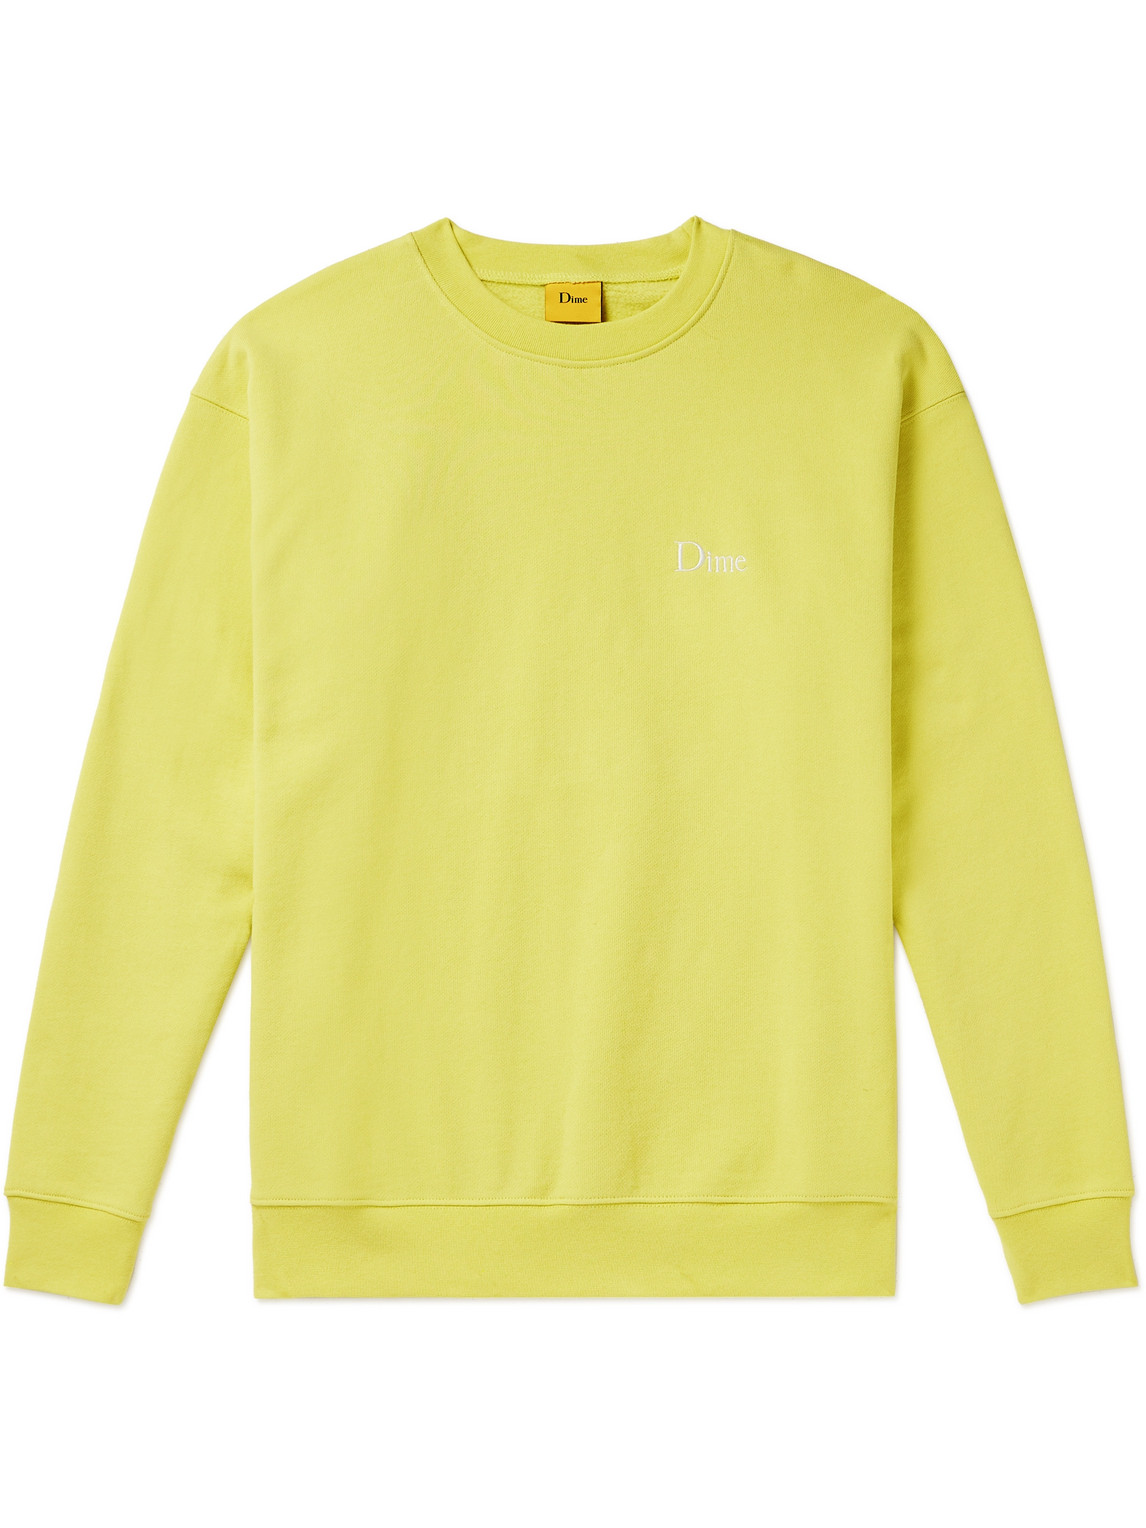 DIME - Logo-Embroidered Cotton-Jersey Sweatshirt - Men - Yellow - L von DIME